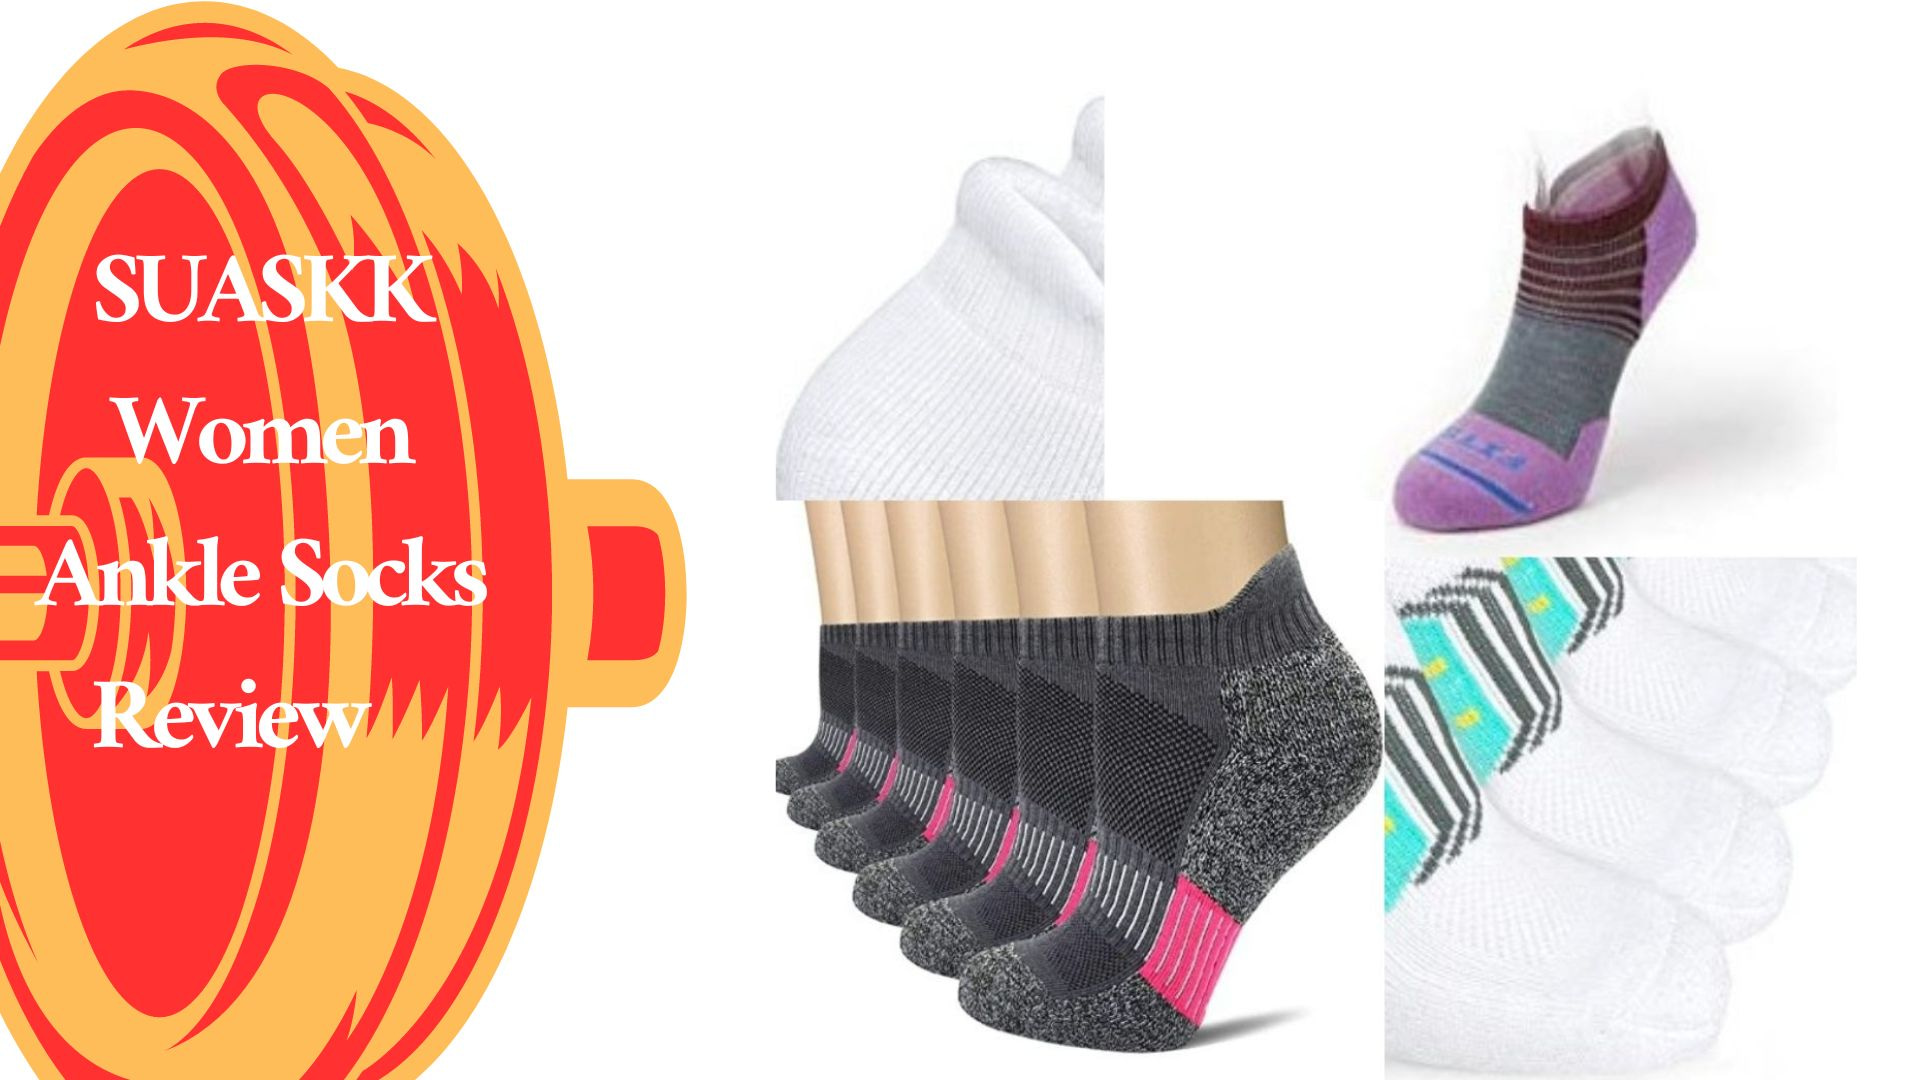 SUASKK Women Ankle Socks Review 